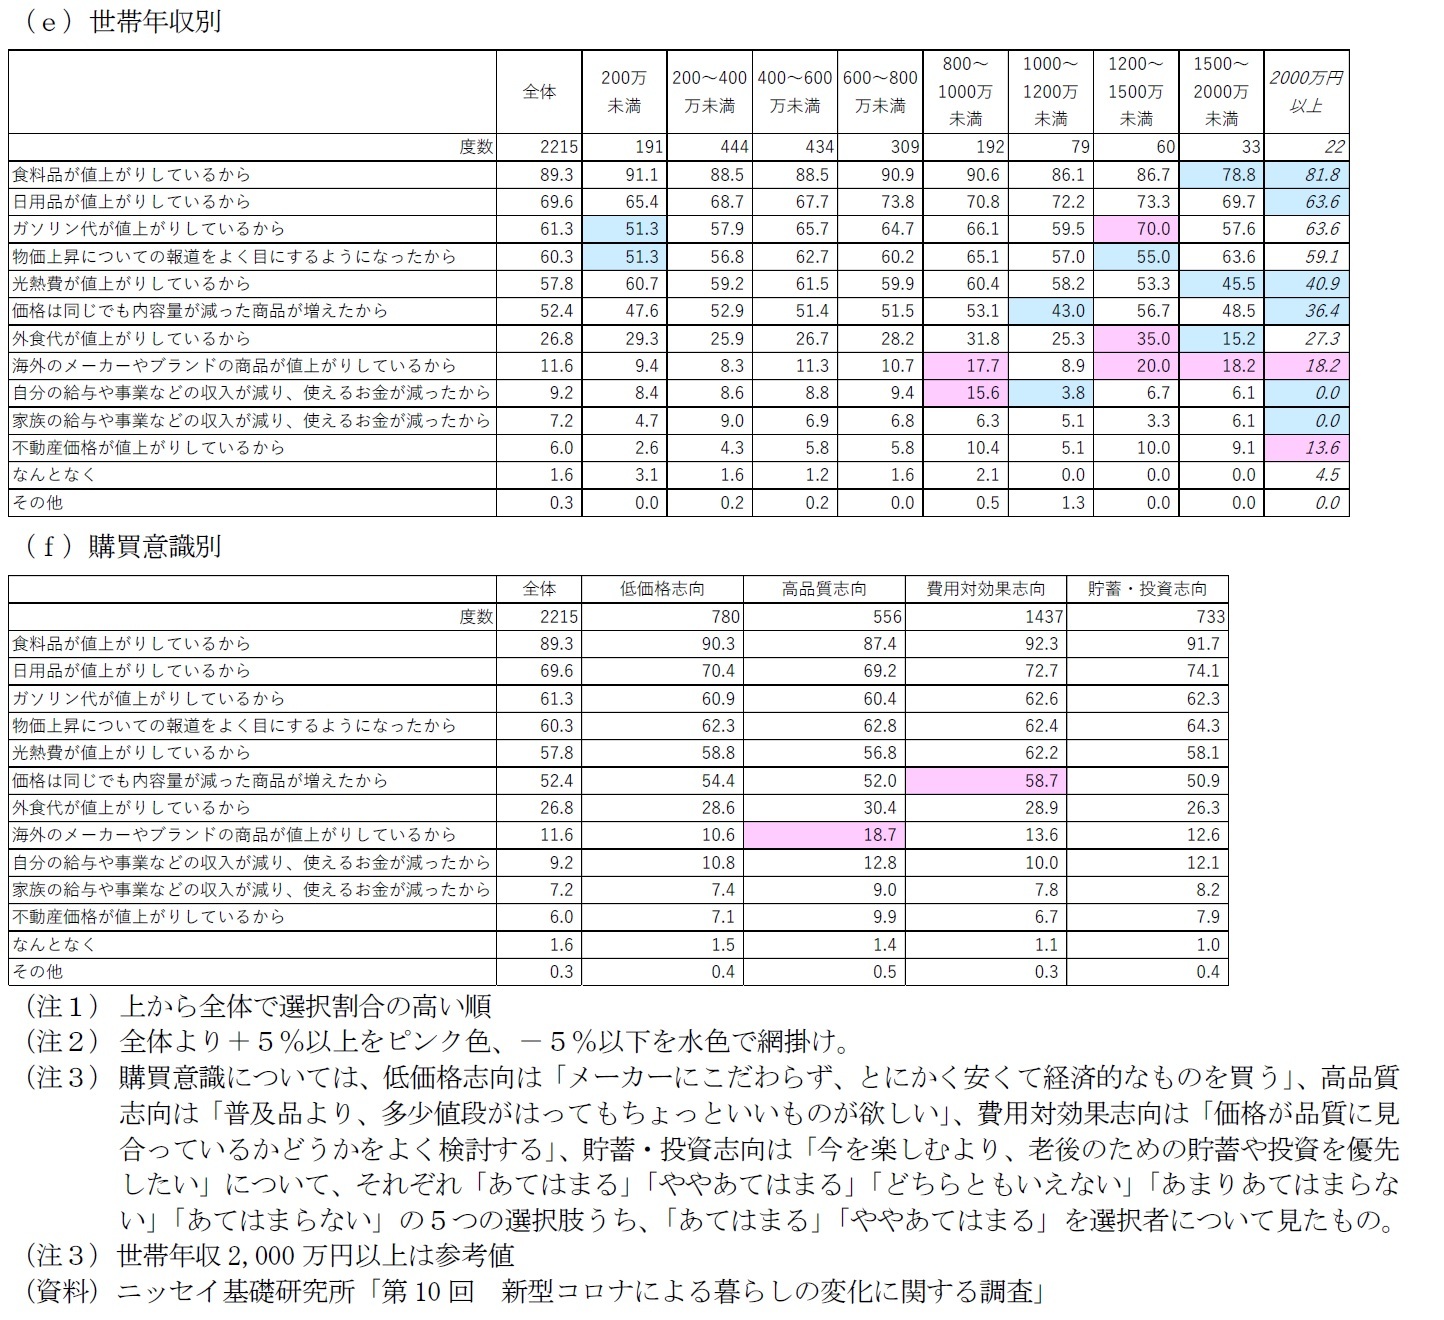 図表６－２　属性別に見た日本国内の物価上昇を実感した理由（複数選択）